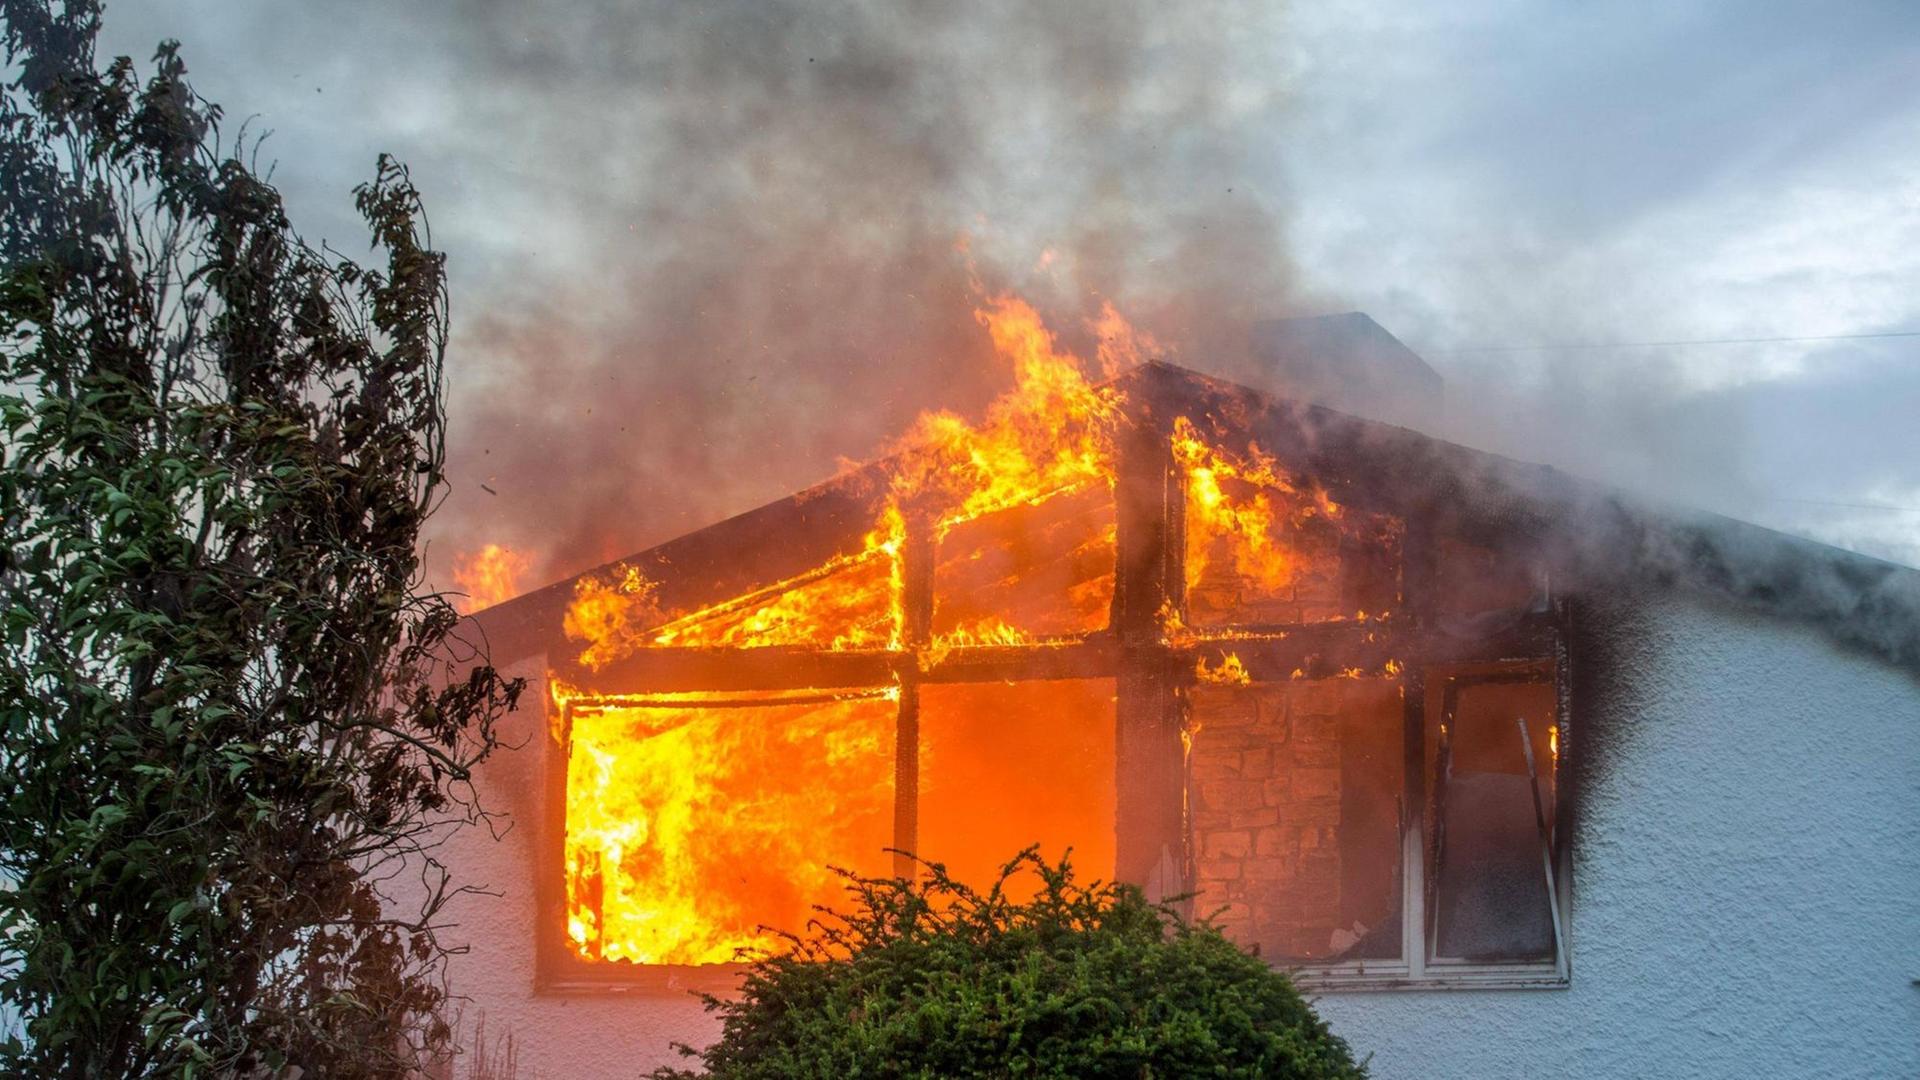 Wohnhaus steht in Brand: Flammen schlagen meterhoch aus den Fenstern